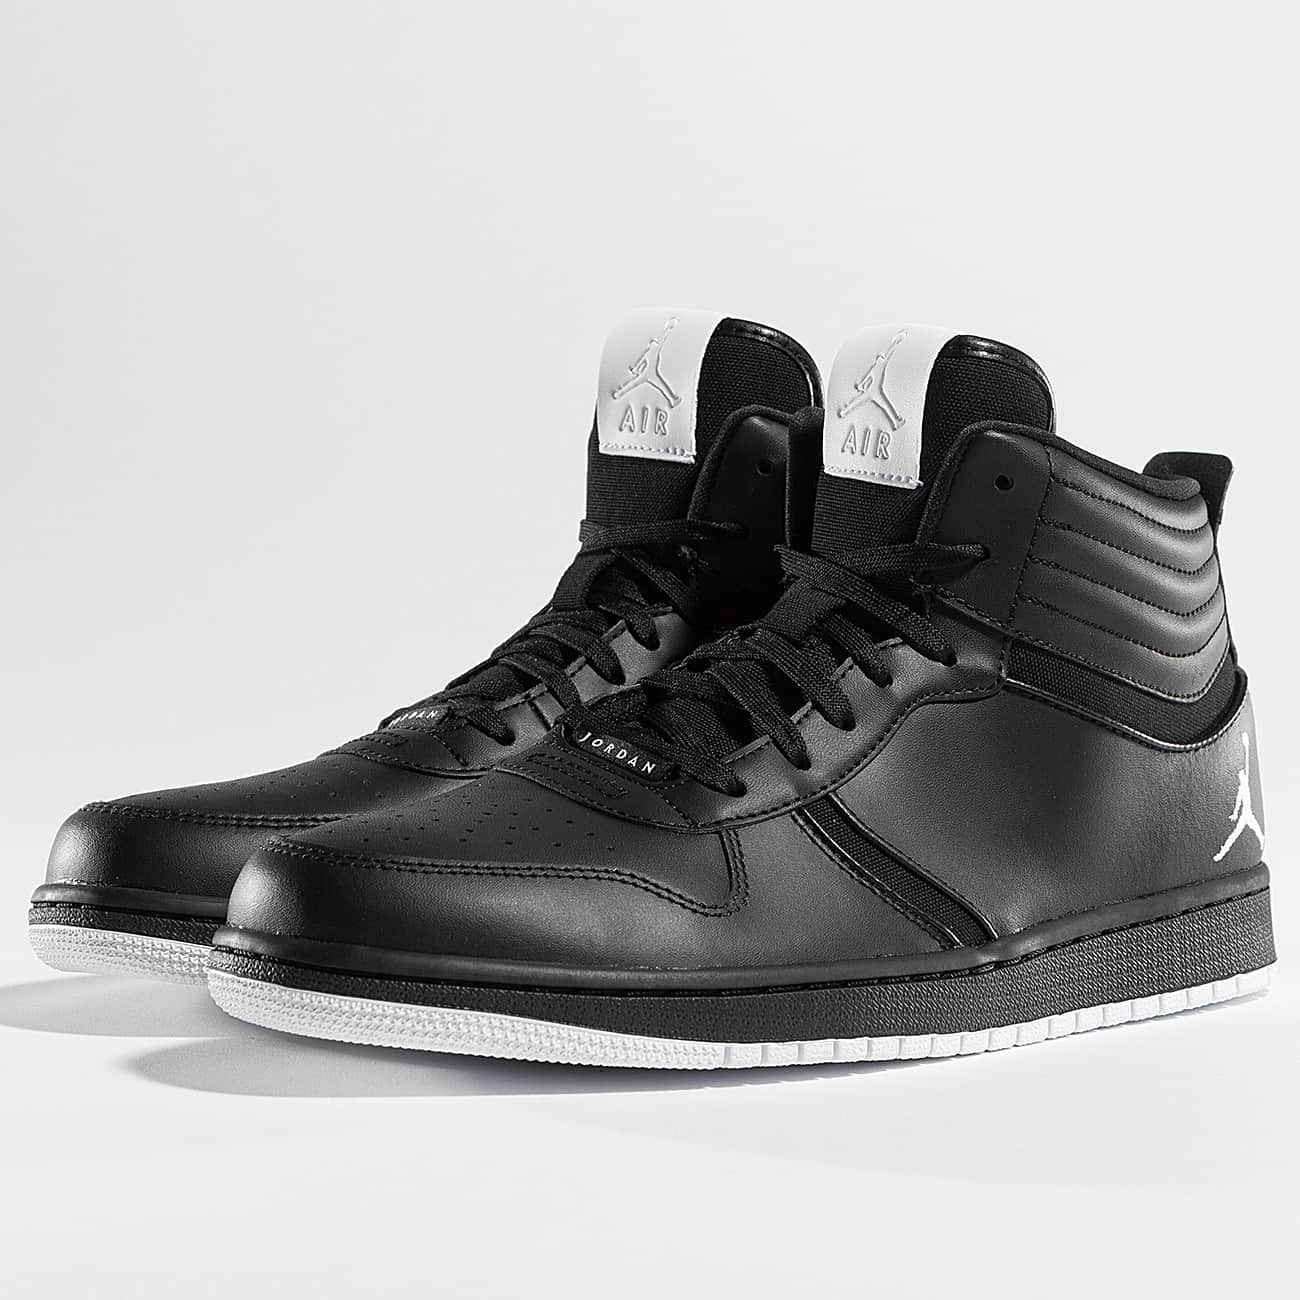 air jordan chaussure basket, Jordan Chaussures / Baskets Heritage en noir homme,nike air jordan soldes,vente luxe